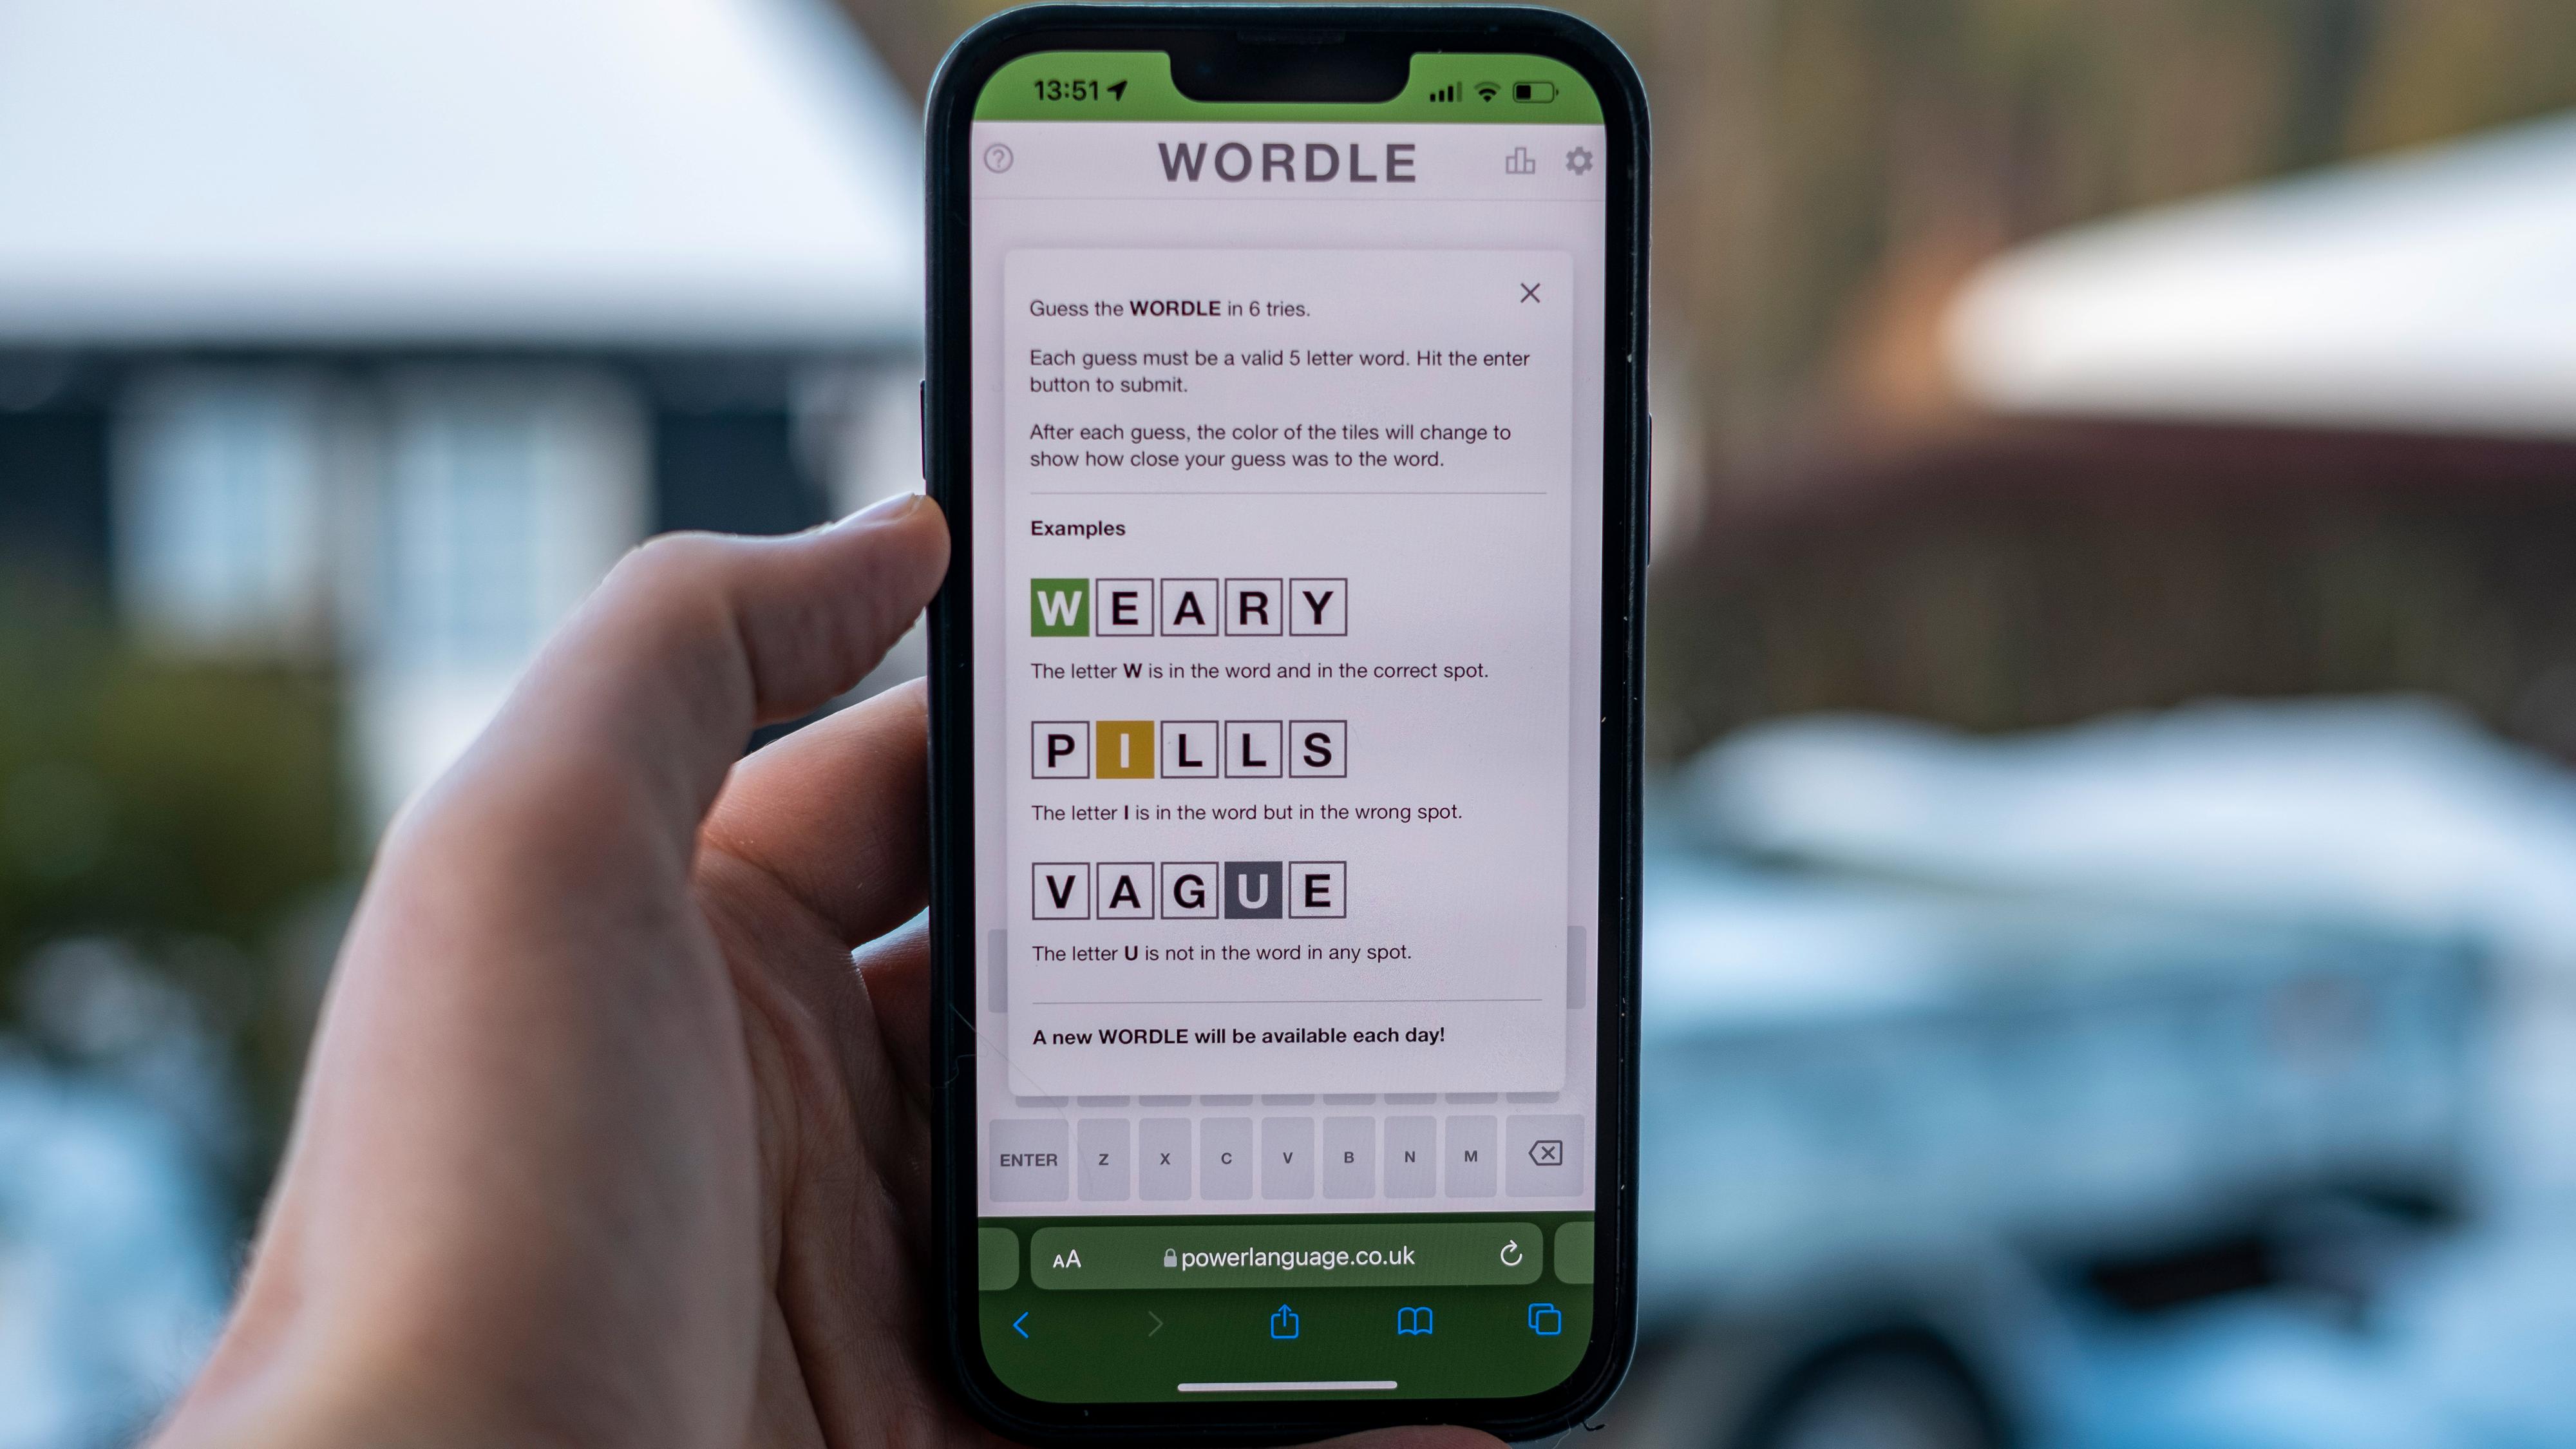 Slik ser Wordle ut i sin rene, gratis utgave. Du kan spille ett spill per dag, og med fem bokstaver. Kopier av appen tilbød flere spillmoduser og variasjoner i antall bokstaver for penger. Disse er nå kastet ut av App Store og Google Play.